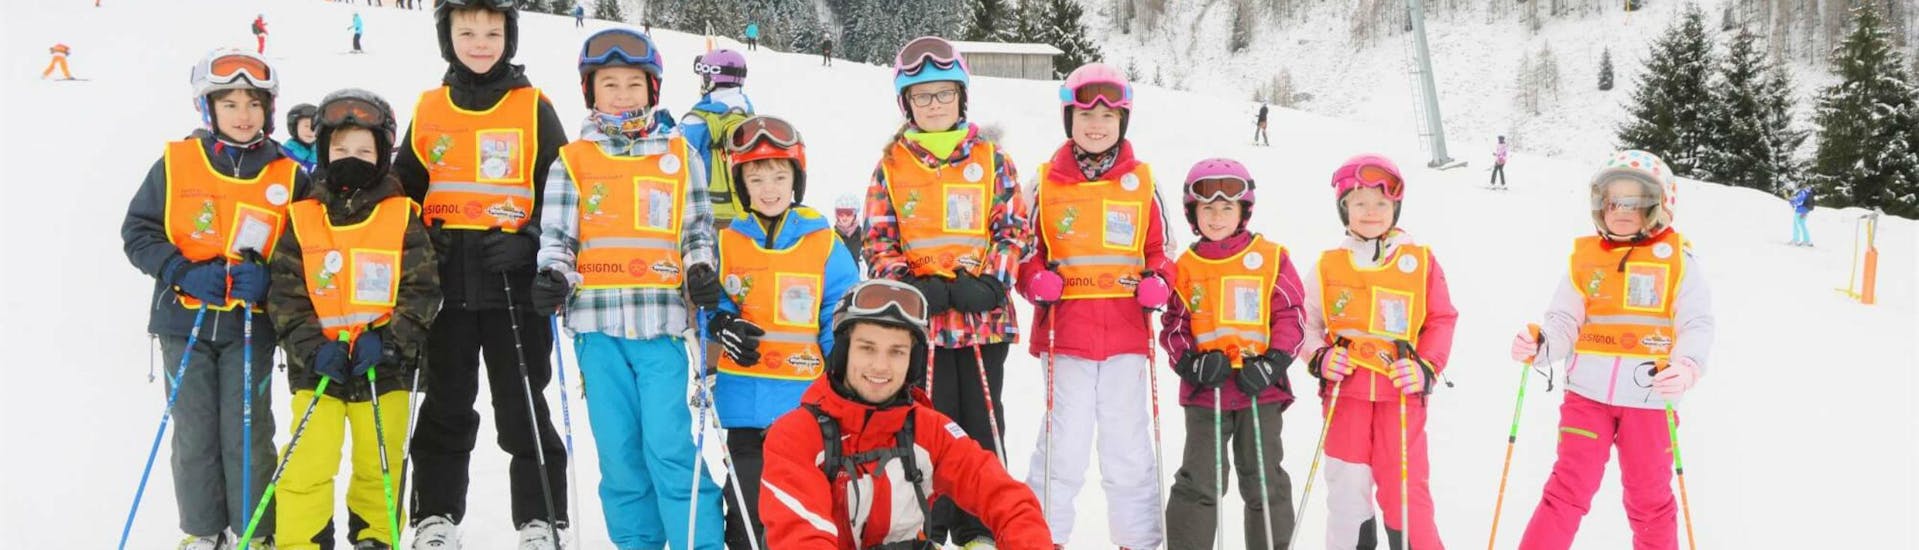 Eine Gruppe Kinder und ihr Skilehrer der Skischule S4 Snowsport Fieberbrunn lächelt beim Kinder Skikurs "Juniorprogramm" (15-18 Jahre) in die Kamera.